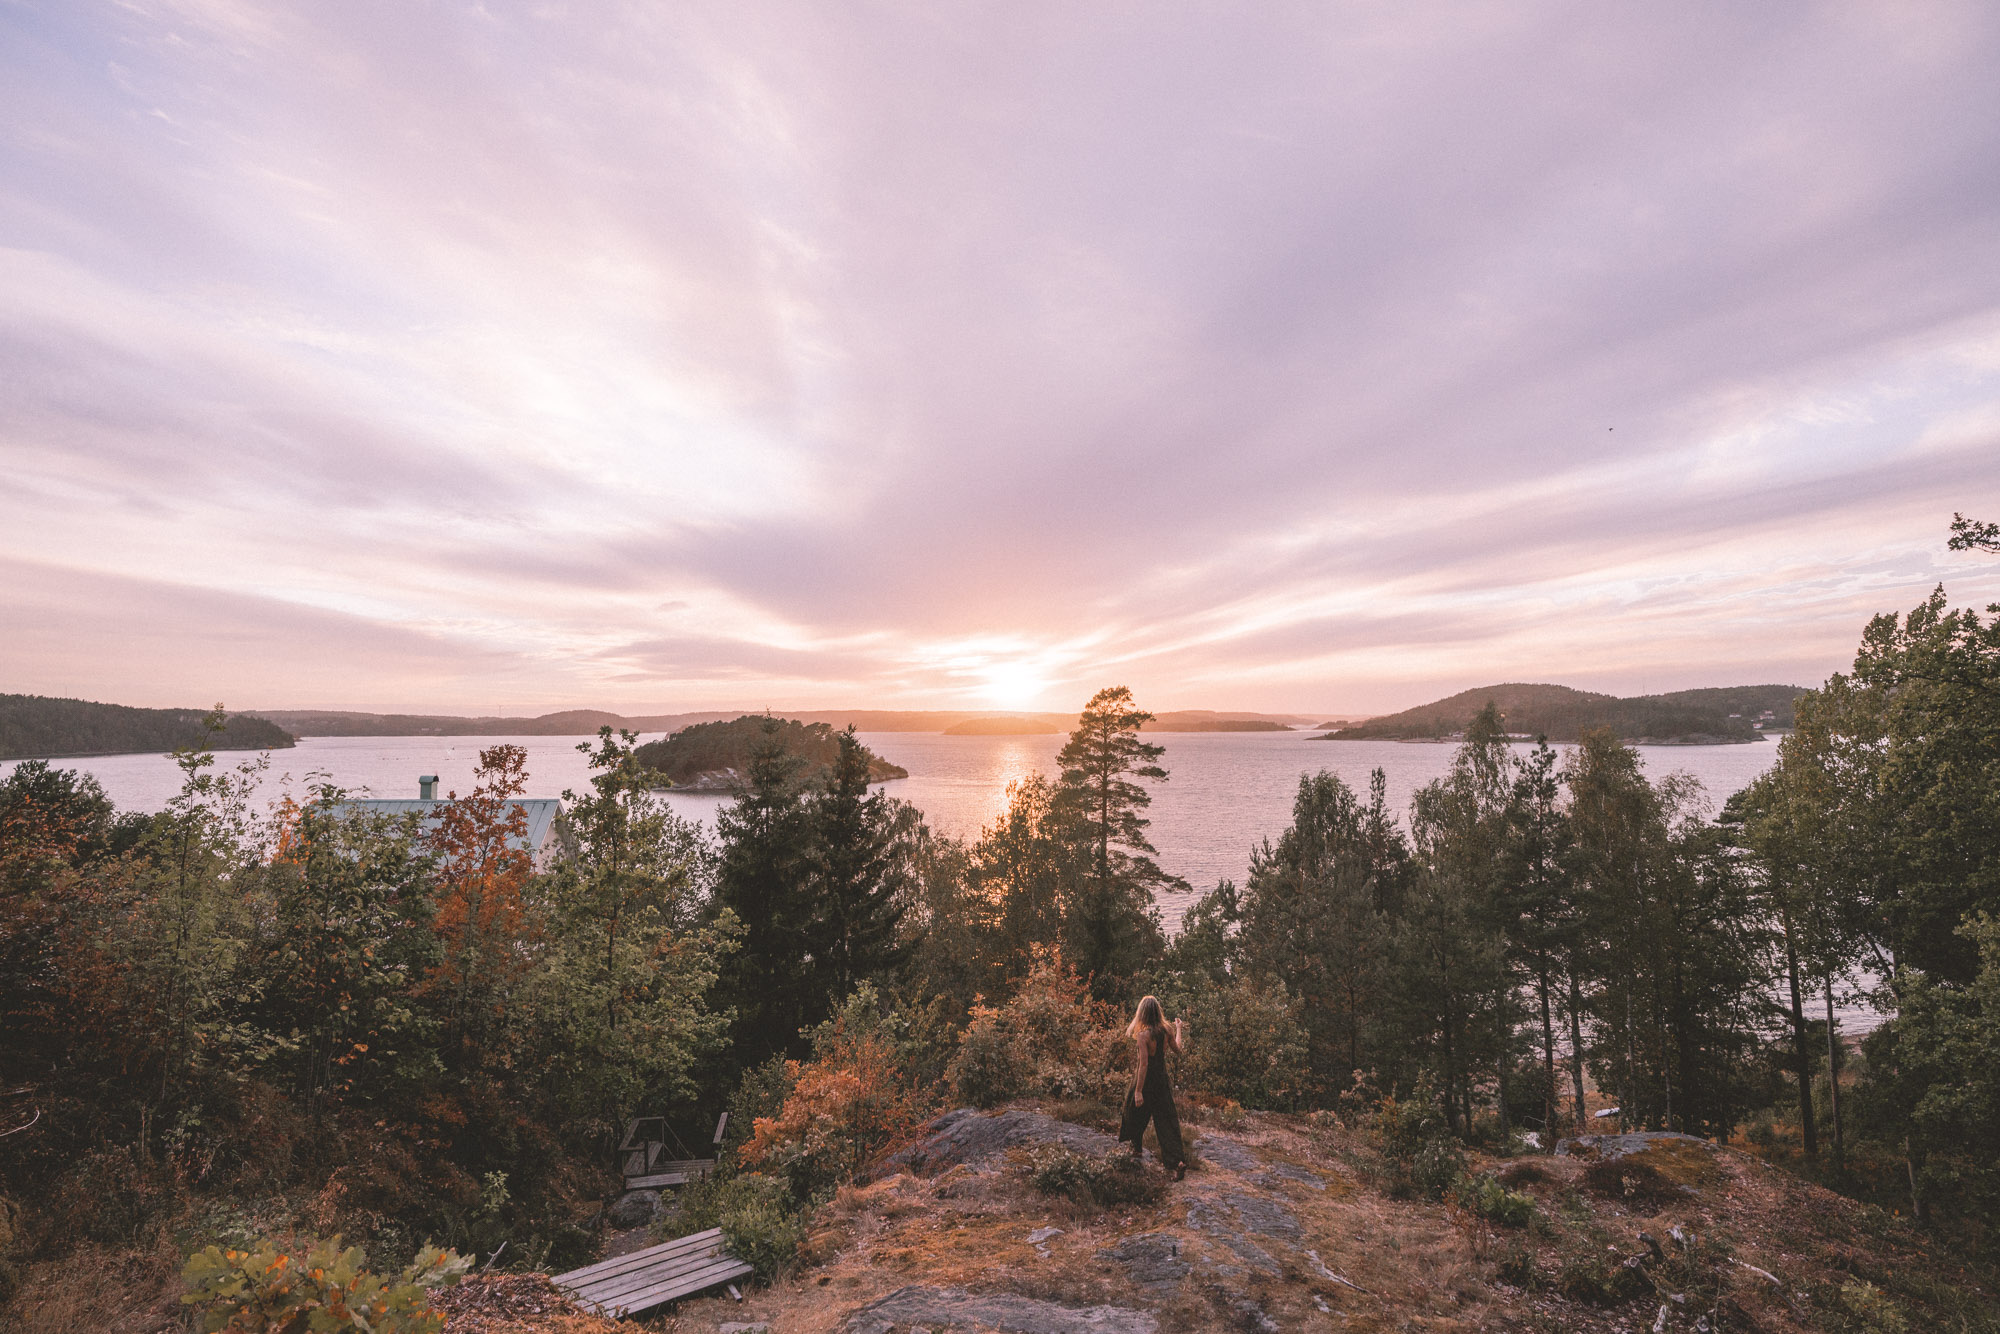 Sunset over the west coast of Sweden in Ljungskile | West Sweden Travel Guide via @finduslost